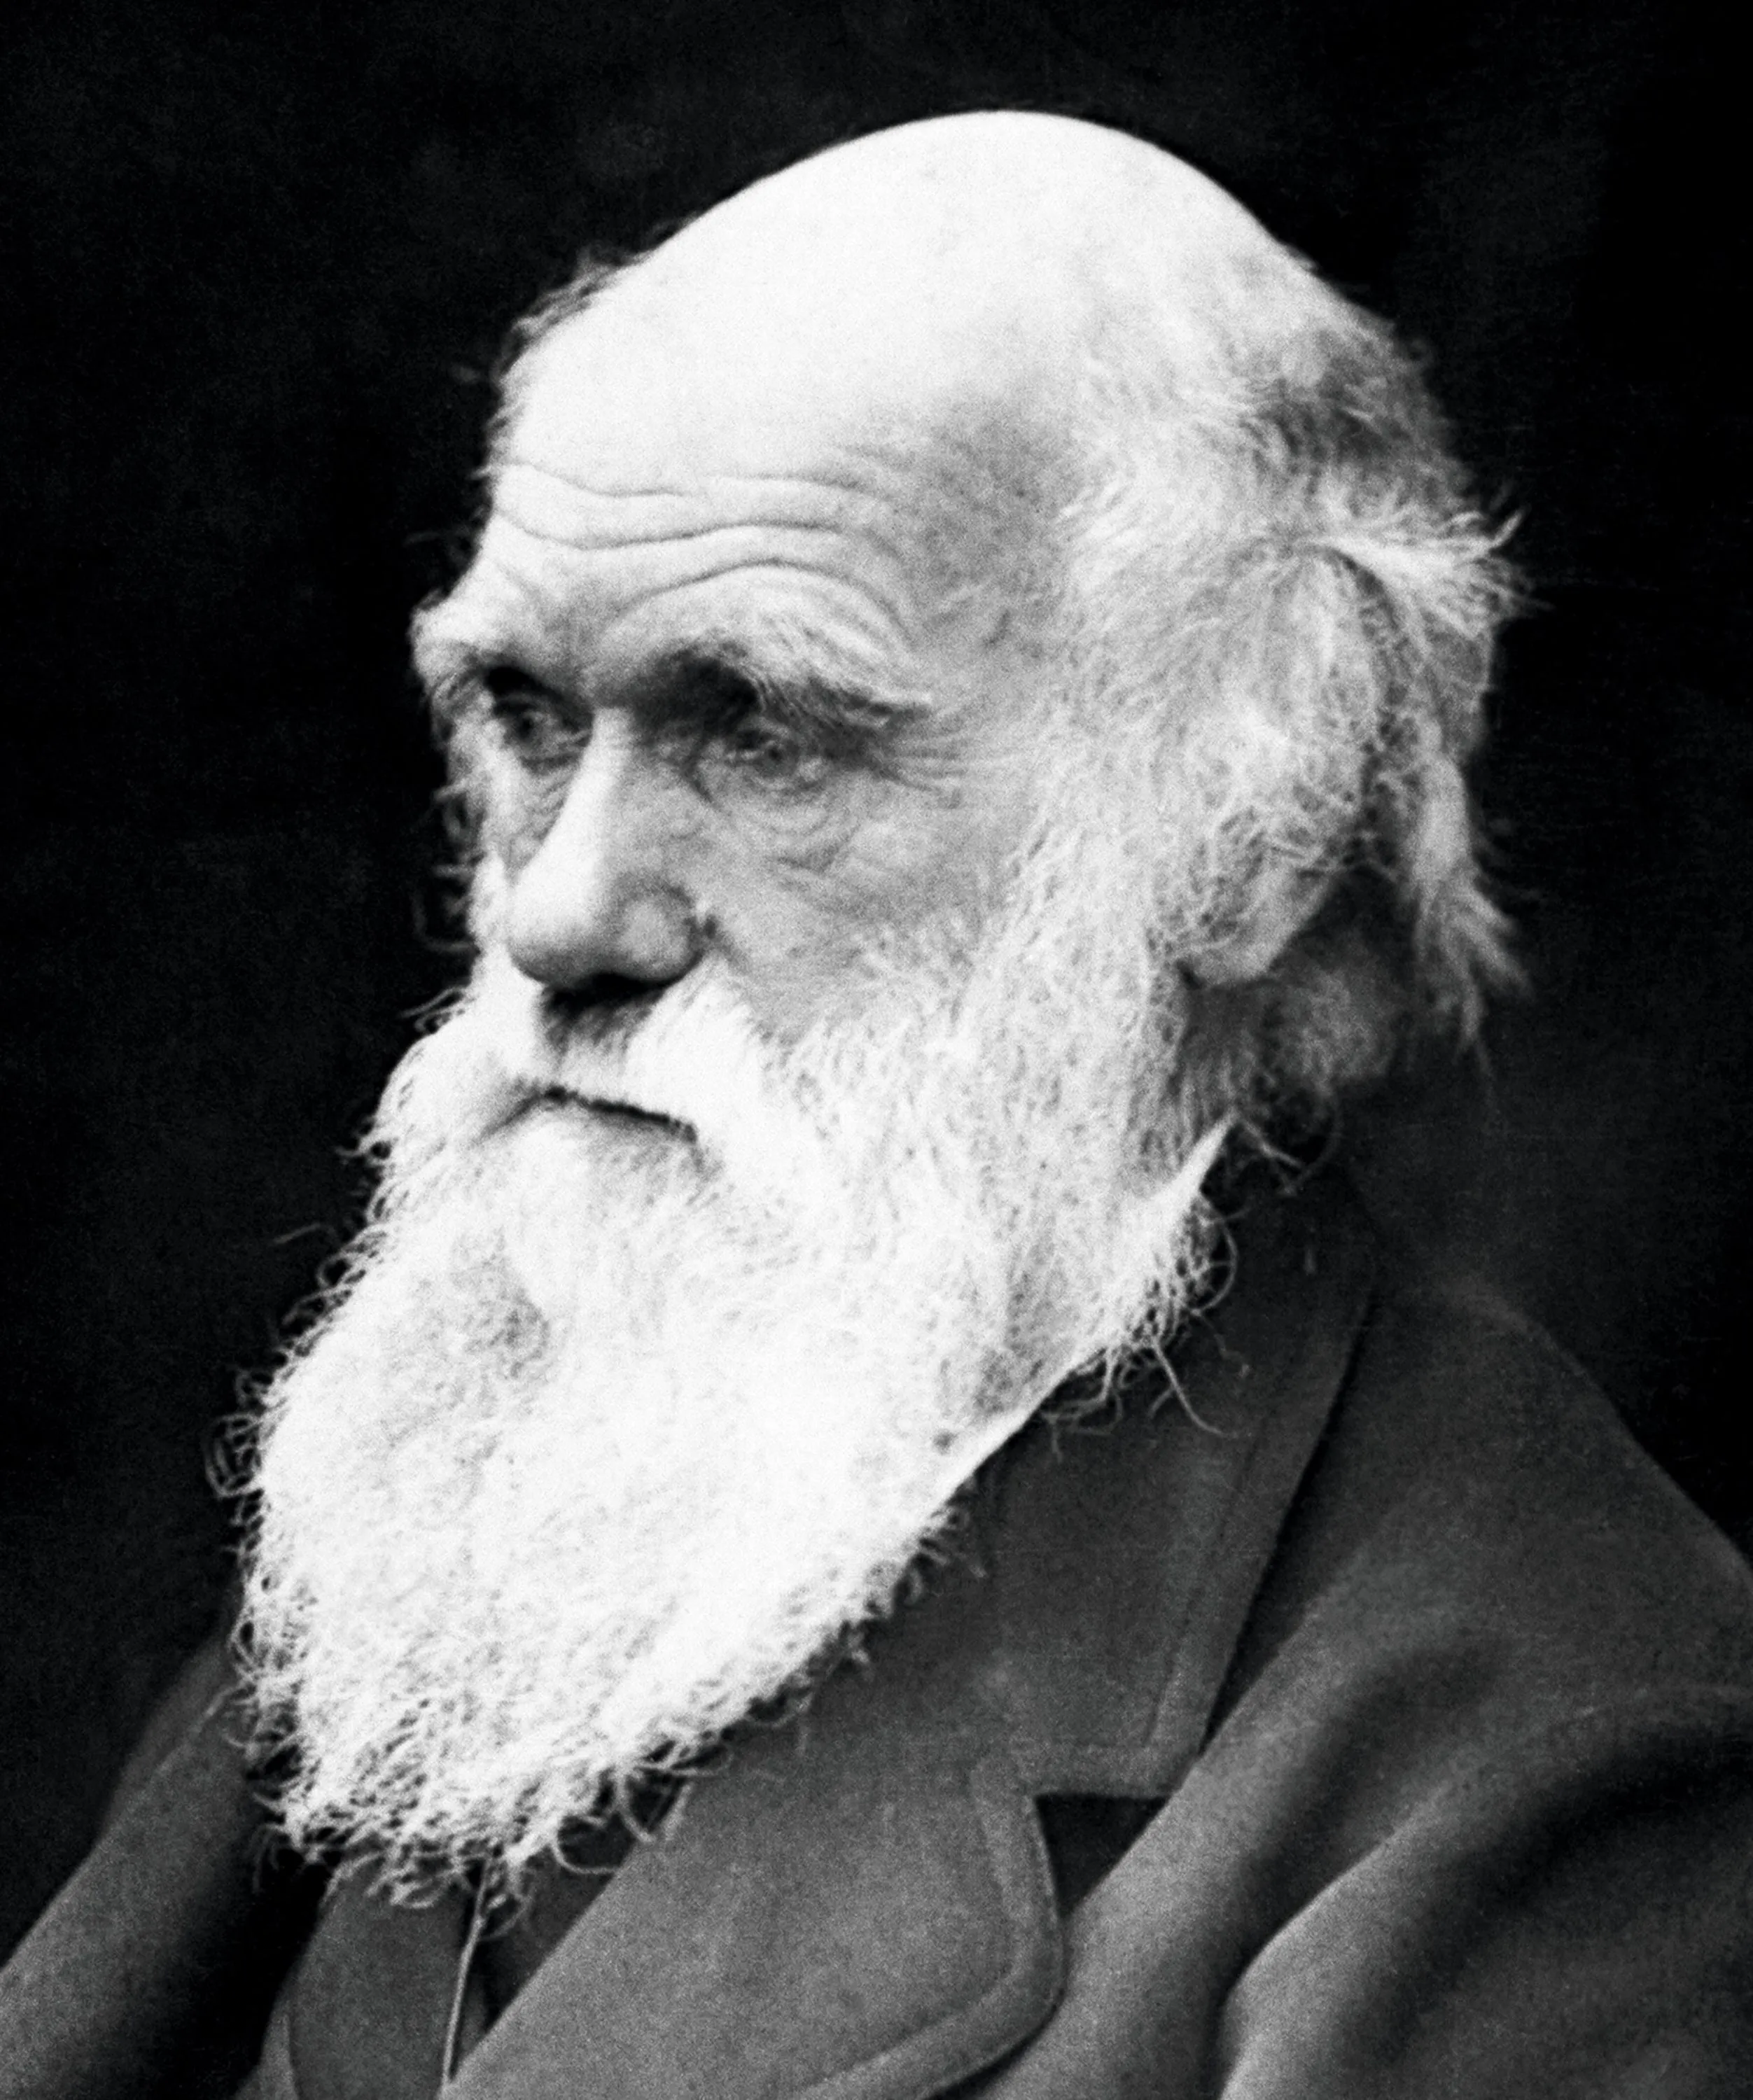 Photographie noir et blanc de Darwin.